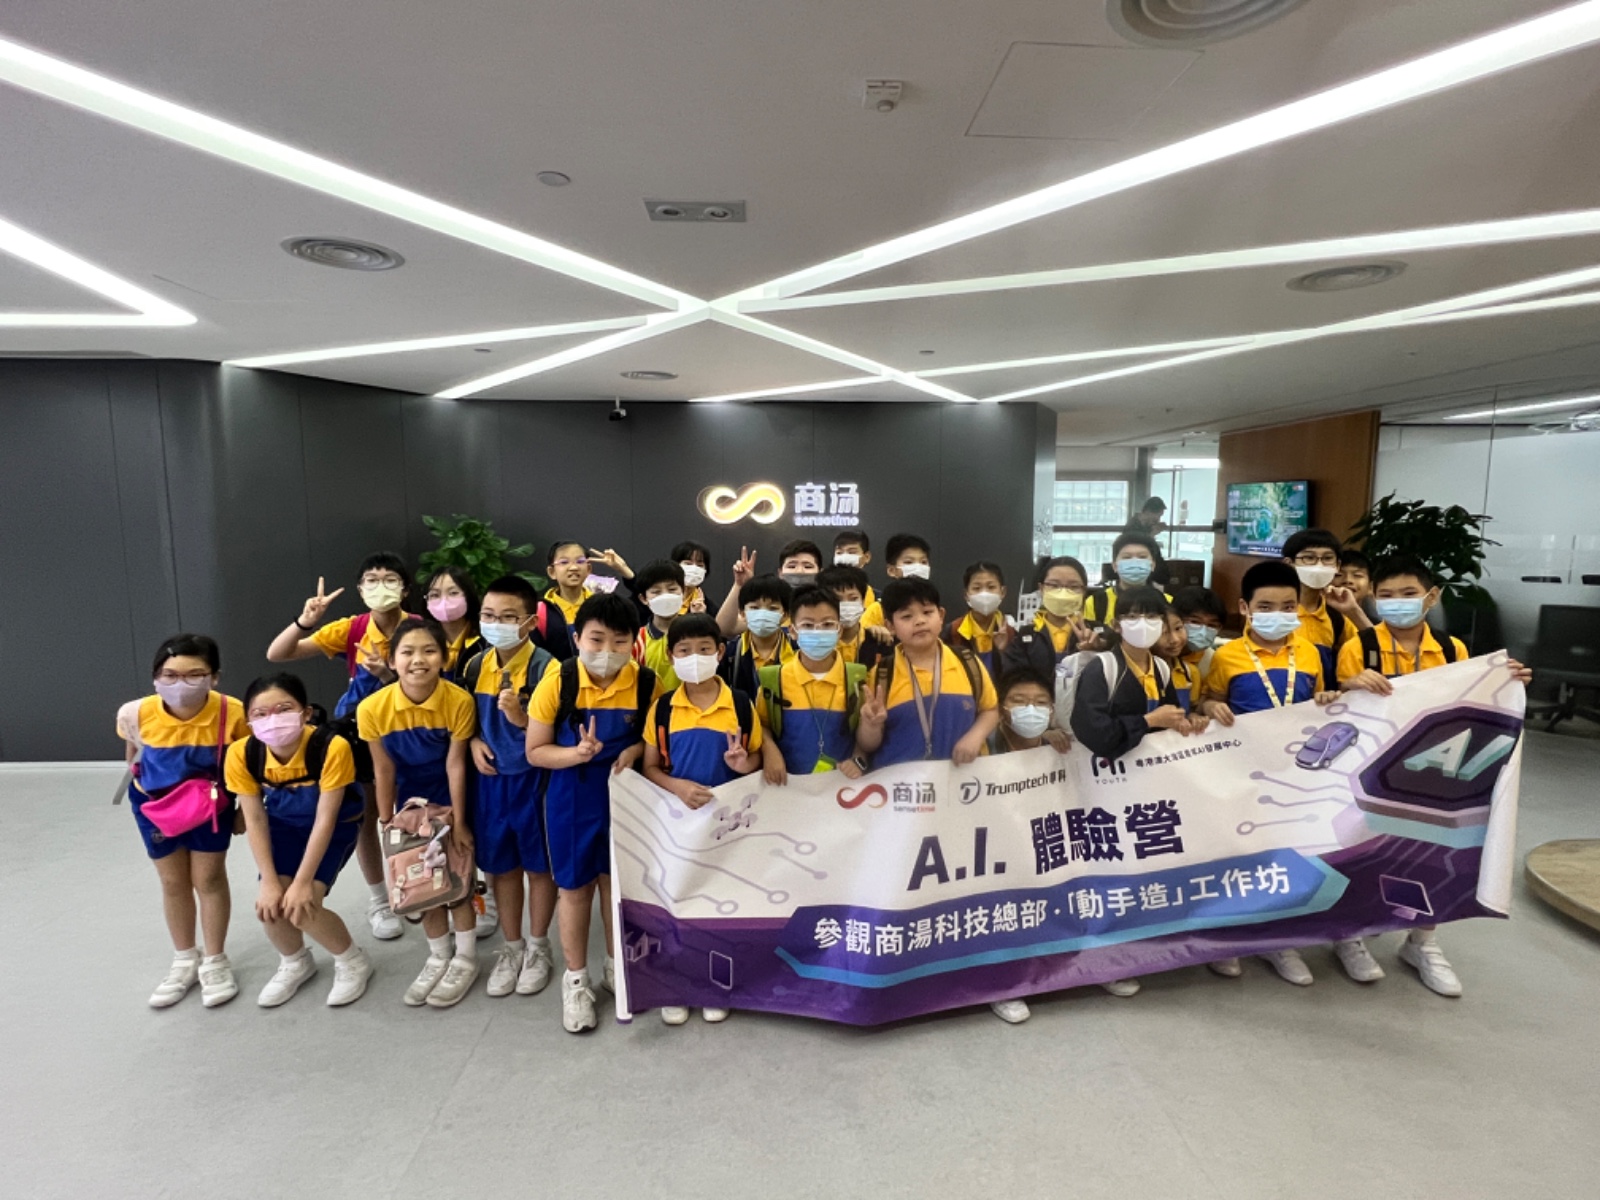 AI Tour - PLK Siu Hon-Sum Primary School